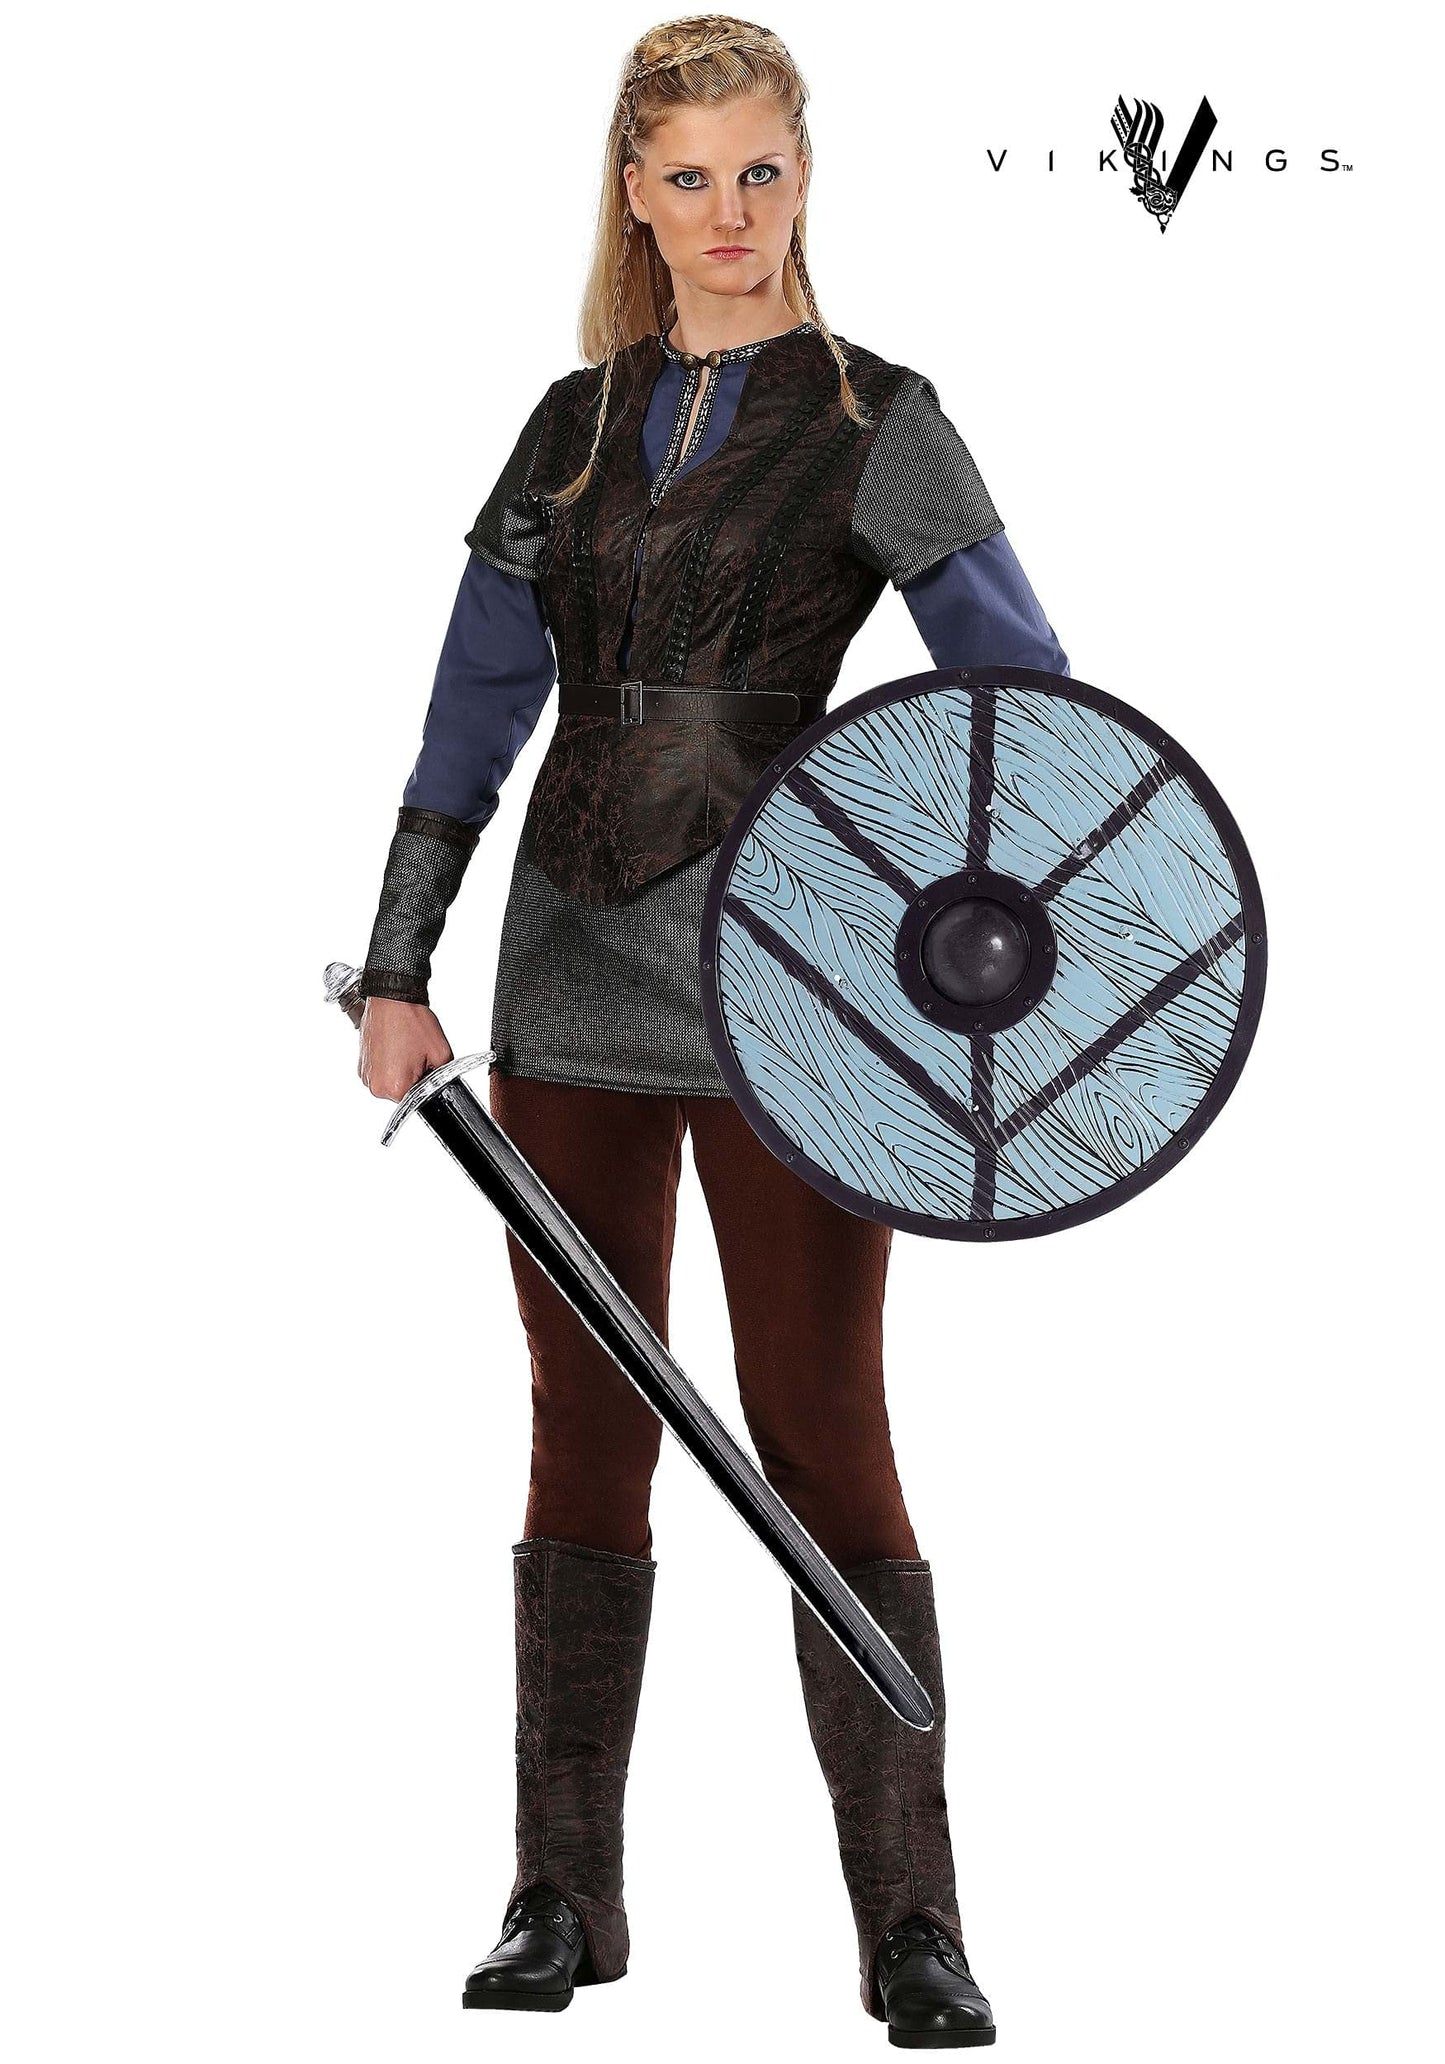 Vikings Lagertha Lothbrok Costume for Women